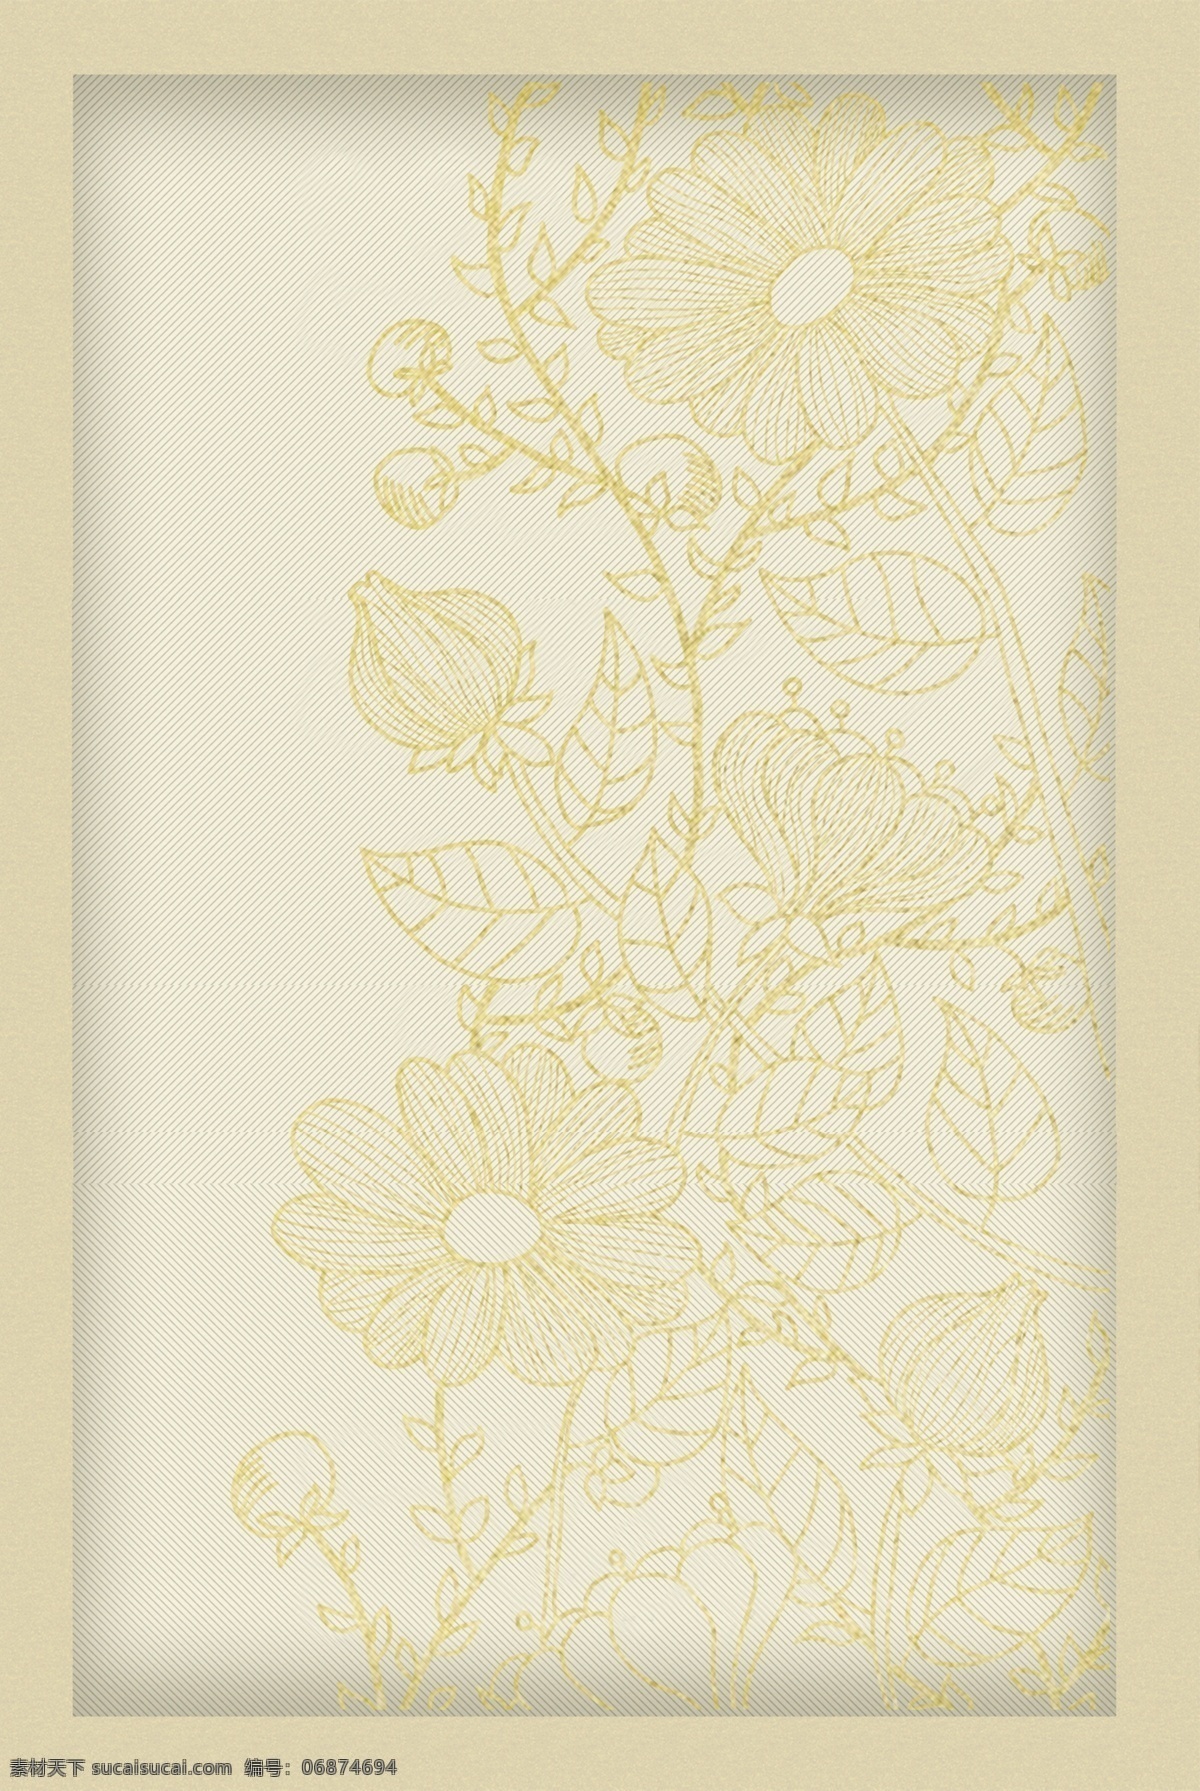 复古 素雅 线描 花卉 边框 金色 金粉 花朵 简约 白描 韩式 古风 电商 淘宝背景 h5